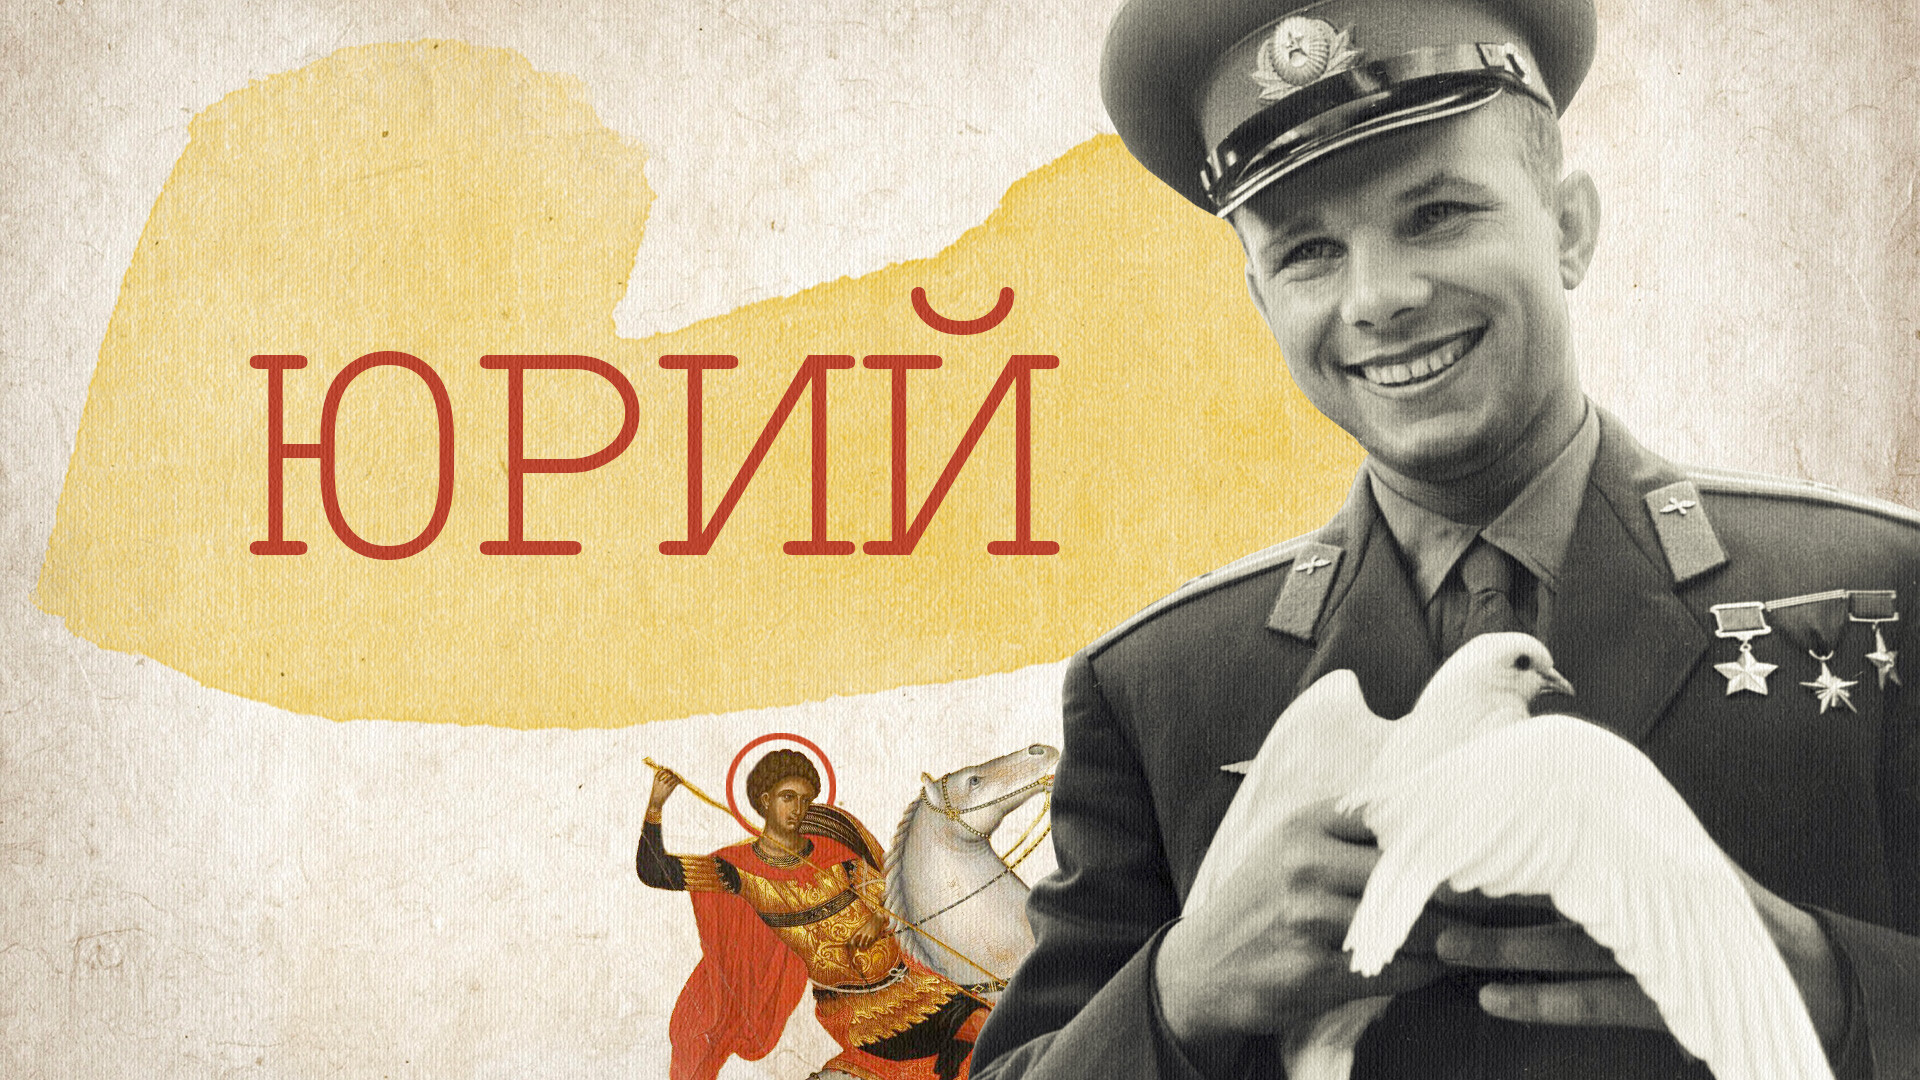 Sveti Jurij, zavetnik Moskve in njen ustanovitelj knez Jurij Dolgorukij; Jurij Gagarin, prvi človek v vesolju
